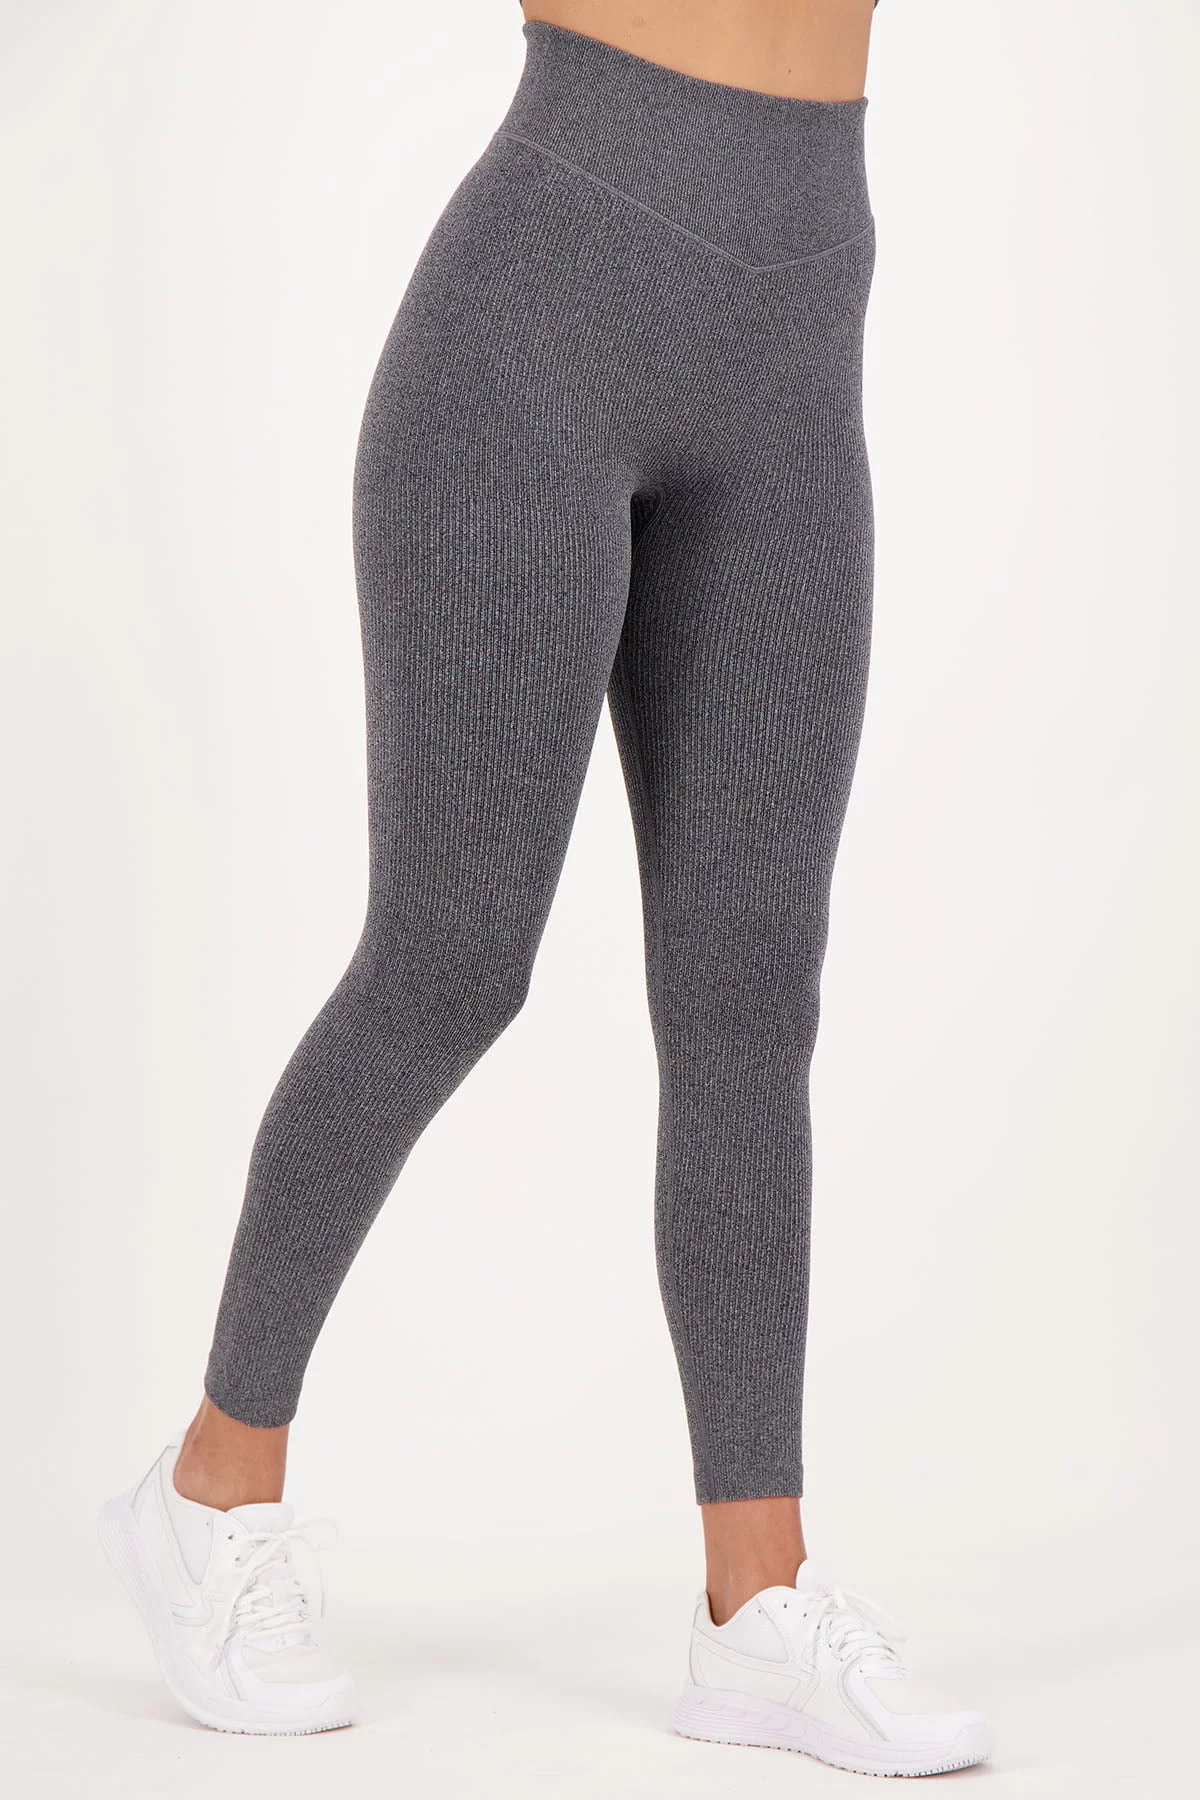 Rib Scrunch Legging Dark Grey - FITTwear.de